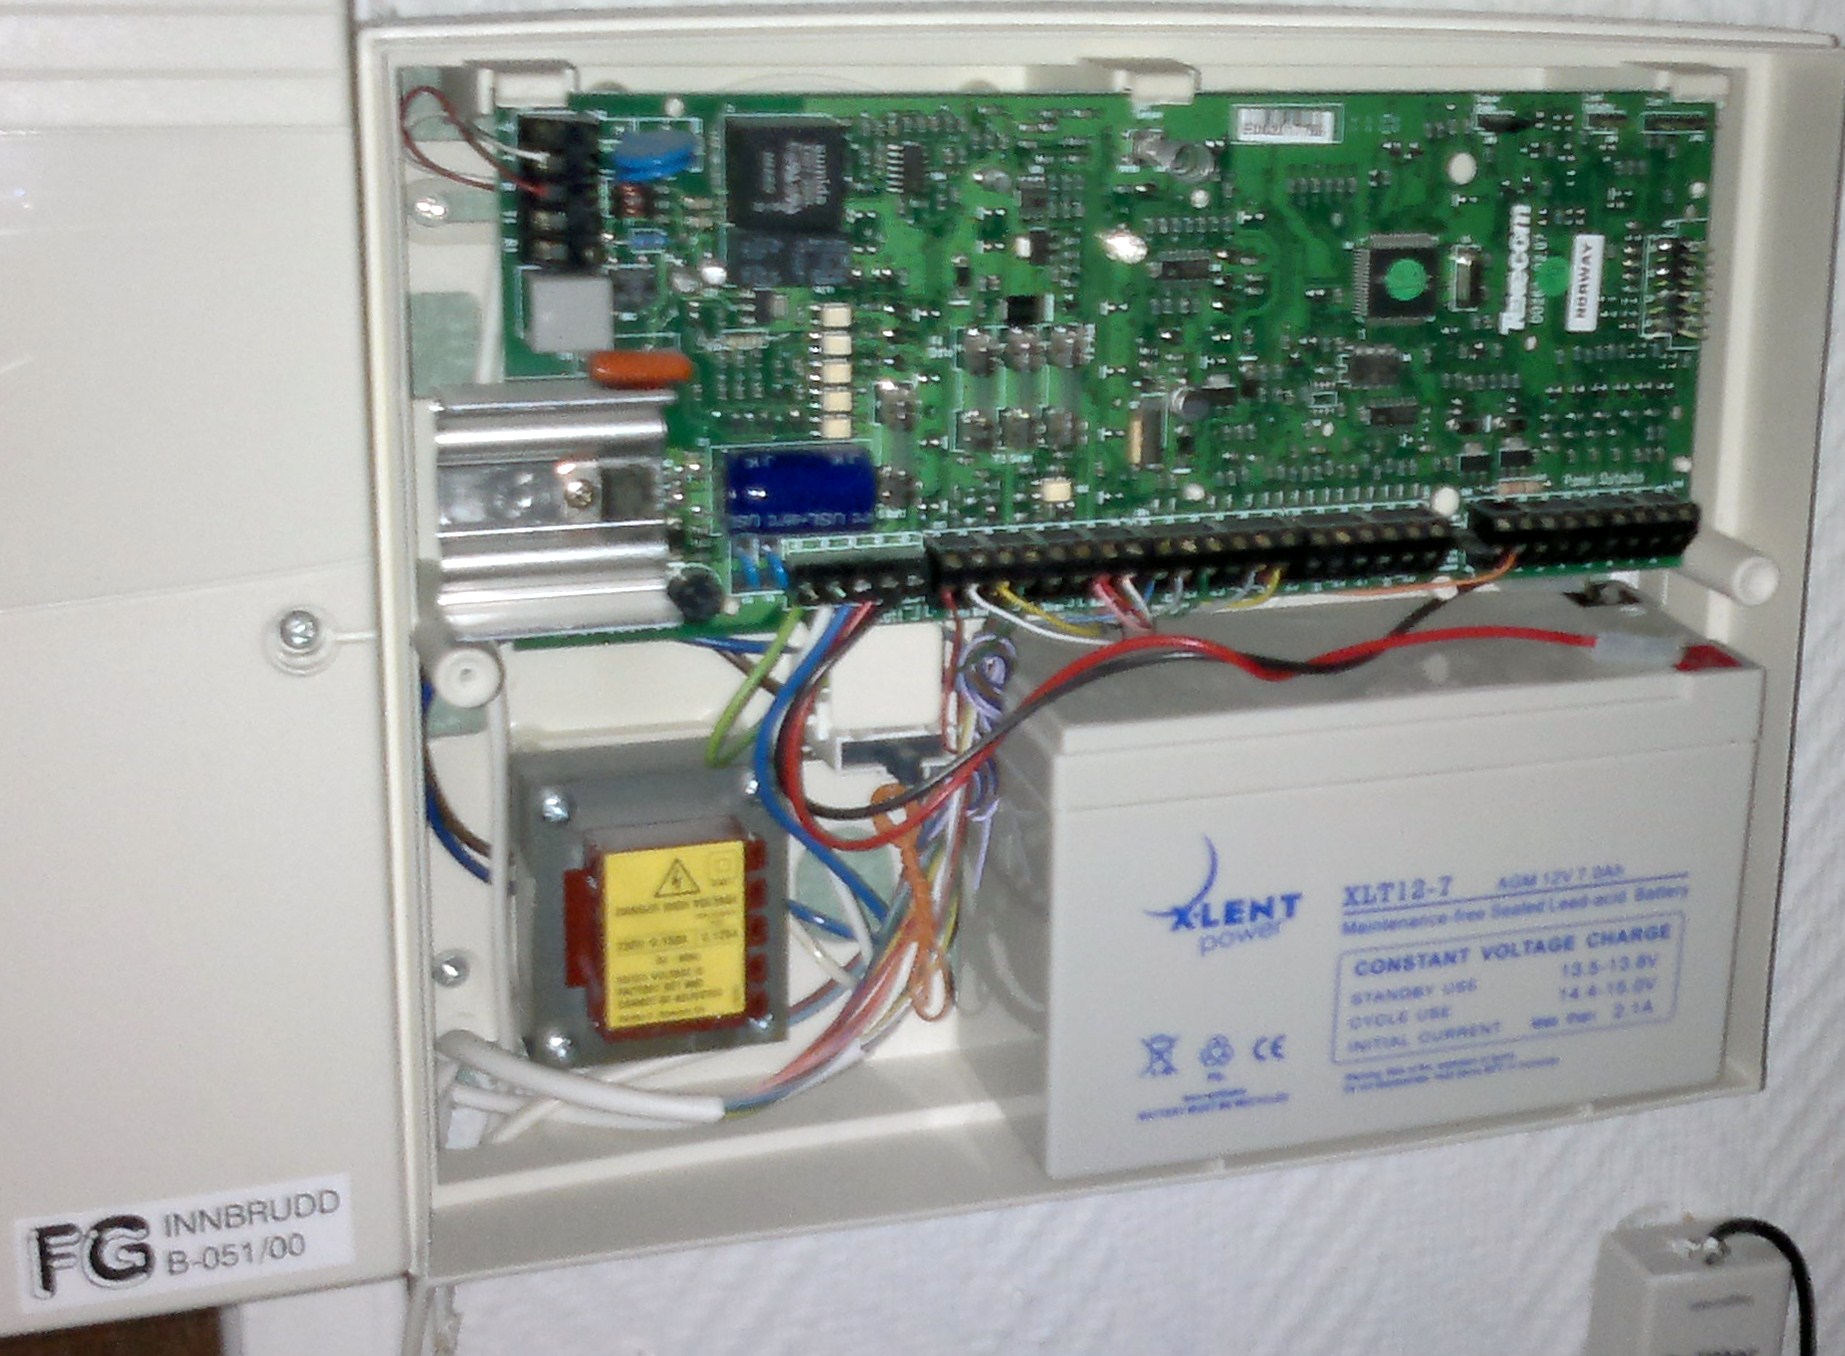 Brukermanual: Vaktservice alarmpanel (1998 model?) - 29012012580.jpg - dkt850